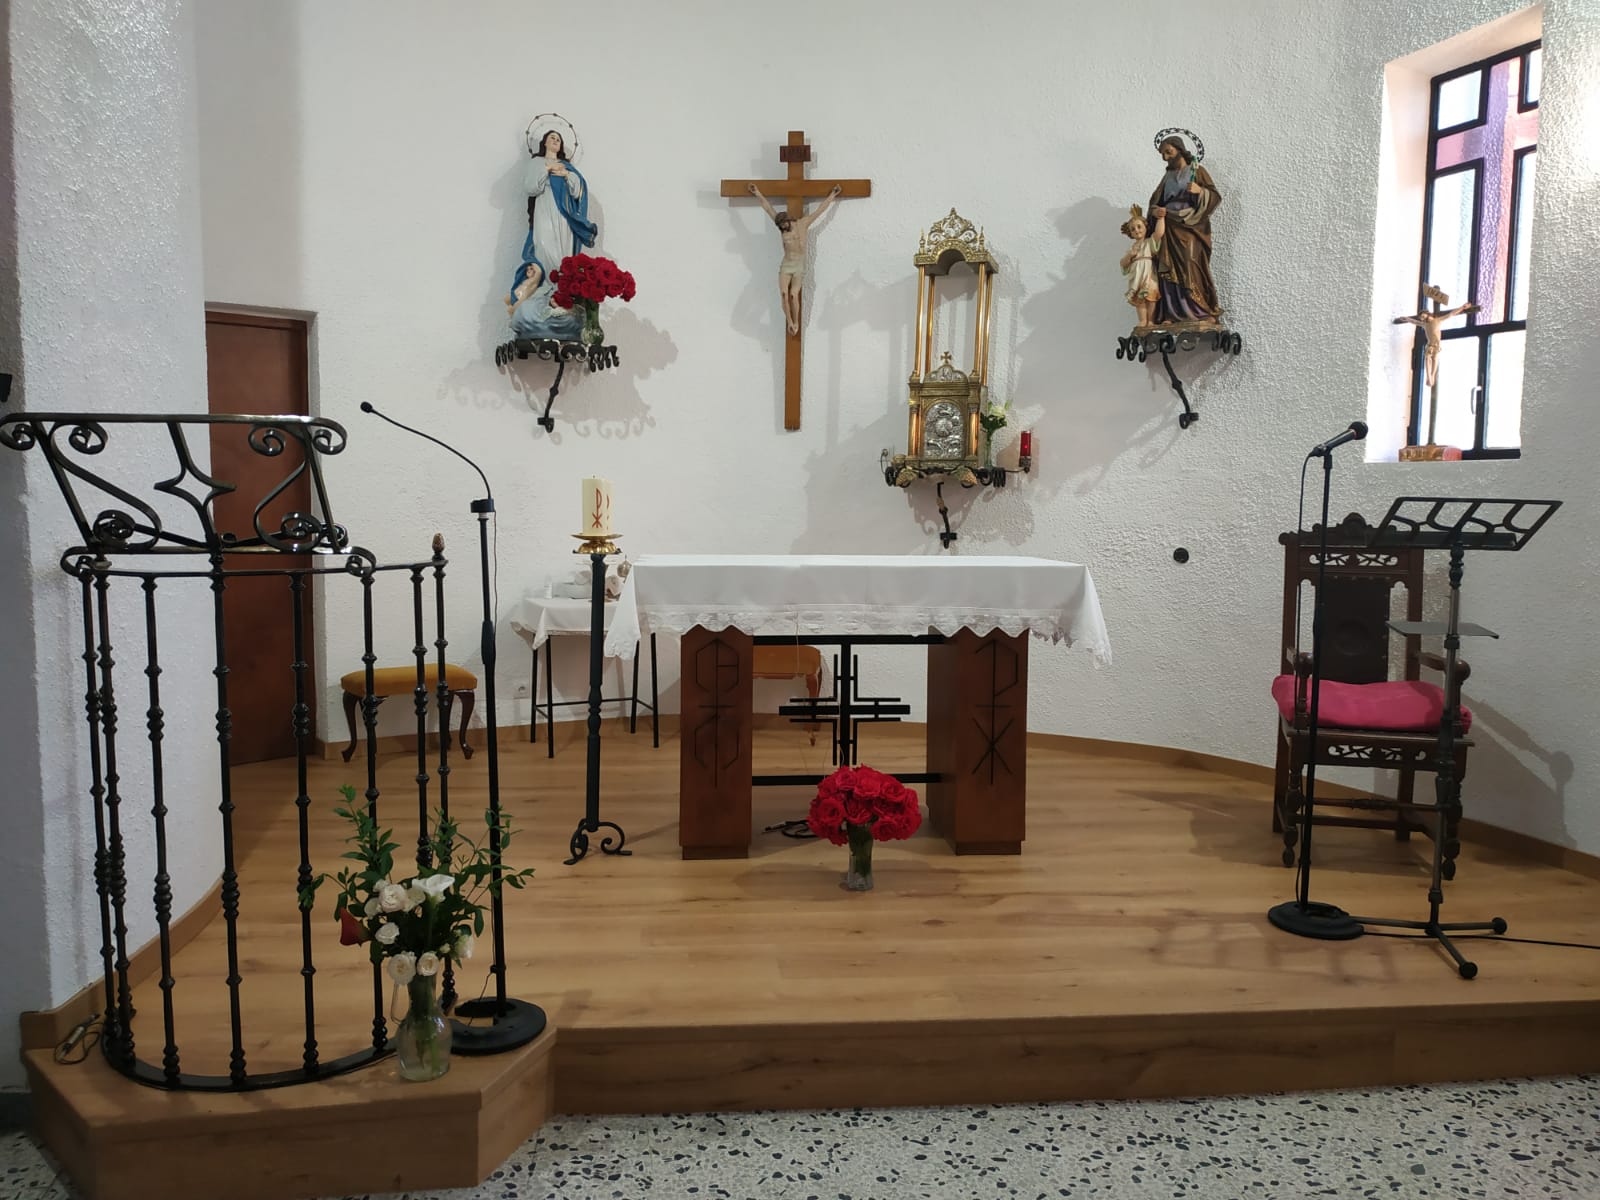 Foto 2 - Amatos de Alba culmina la obra de restauración y adaptación de la iglesia parroquial